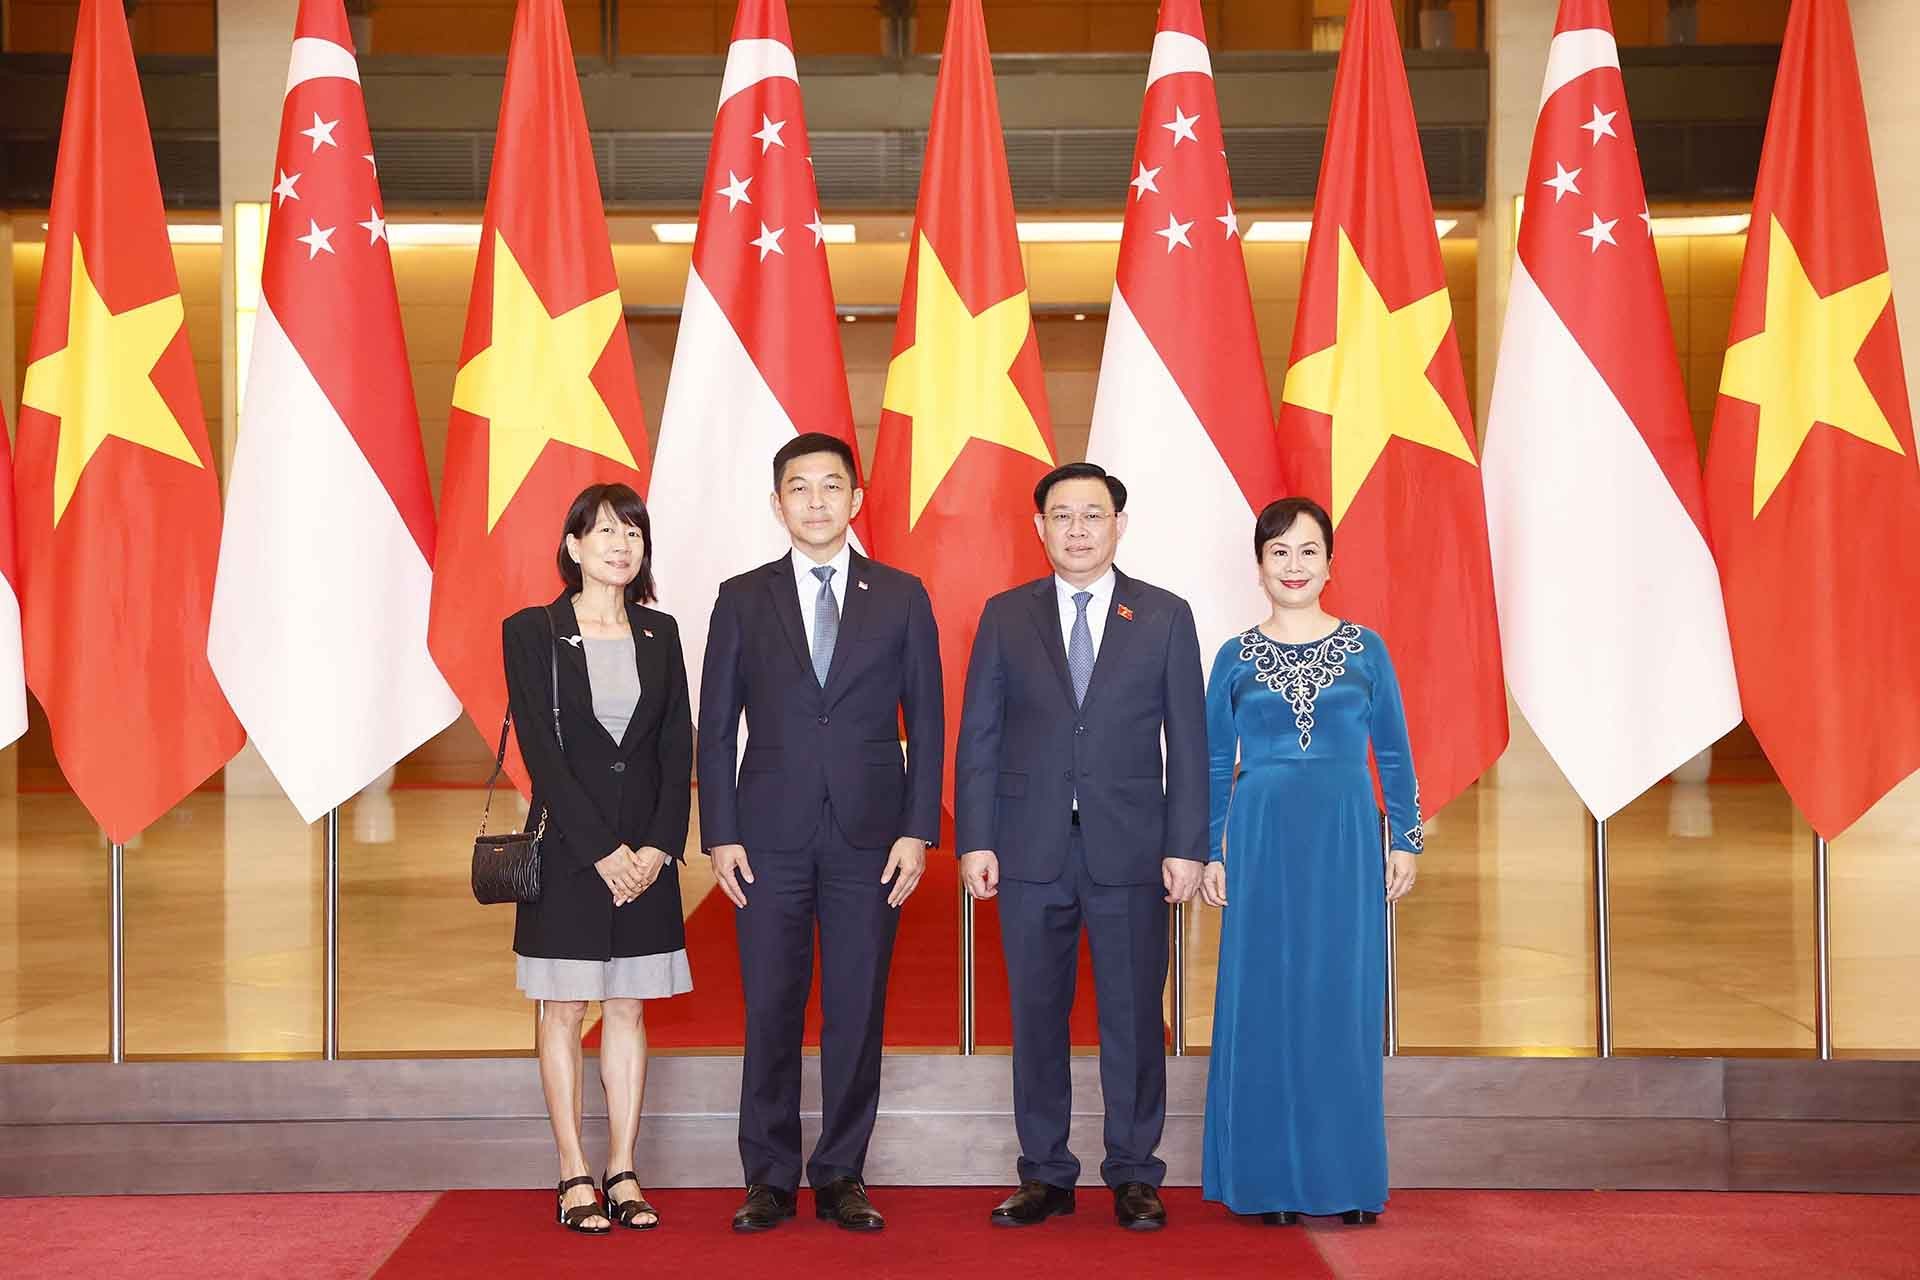 Chủ tịch Quốc hội Singapore thăm Việt Nam: Tiềm năng và tương lai hợp tác kinh tế Singapore-Việt Nam rất tươi sáng!